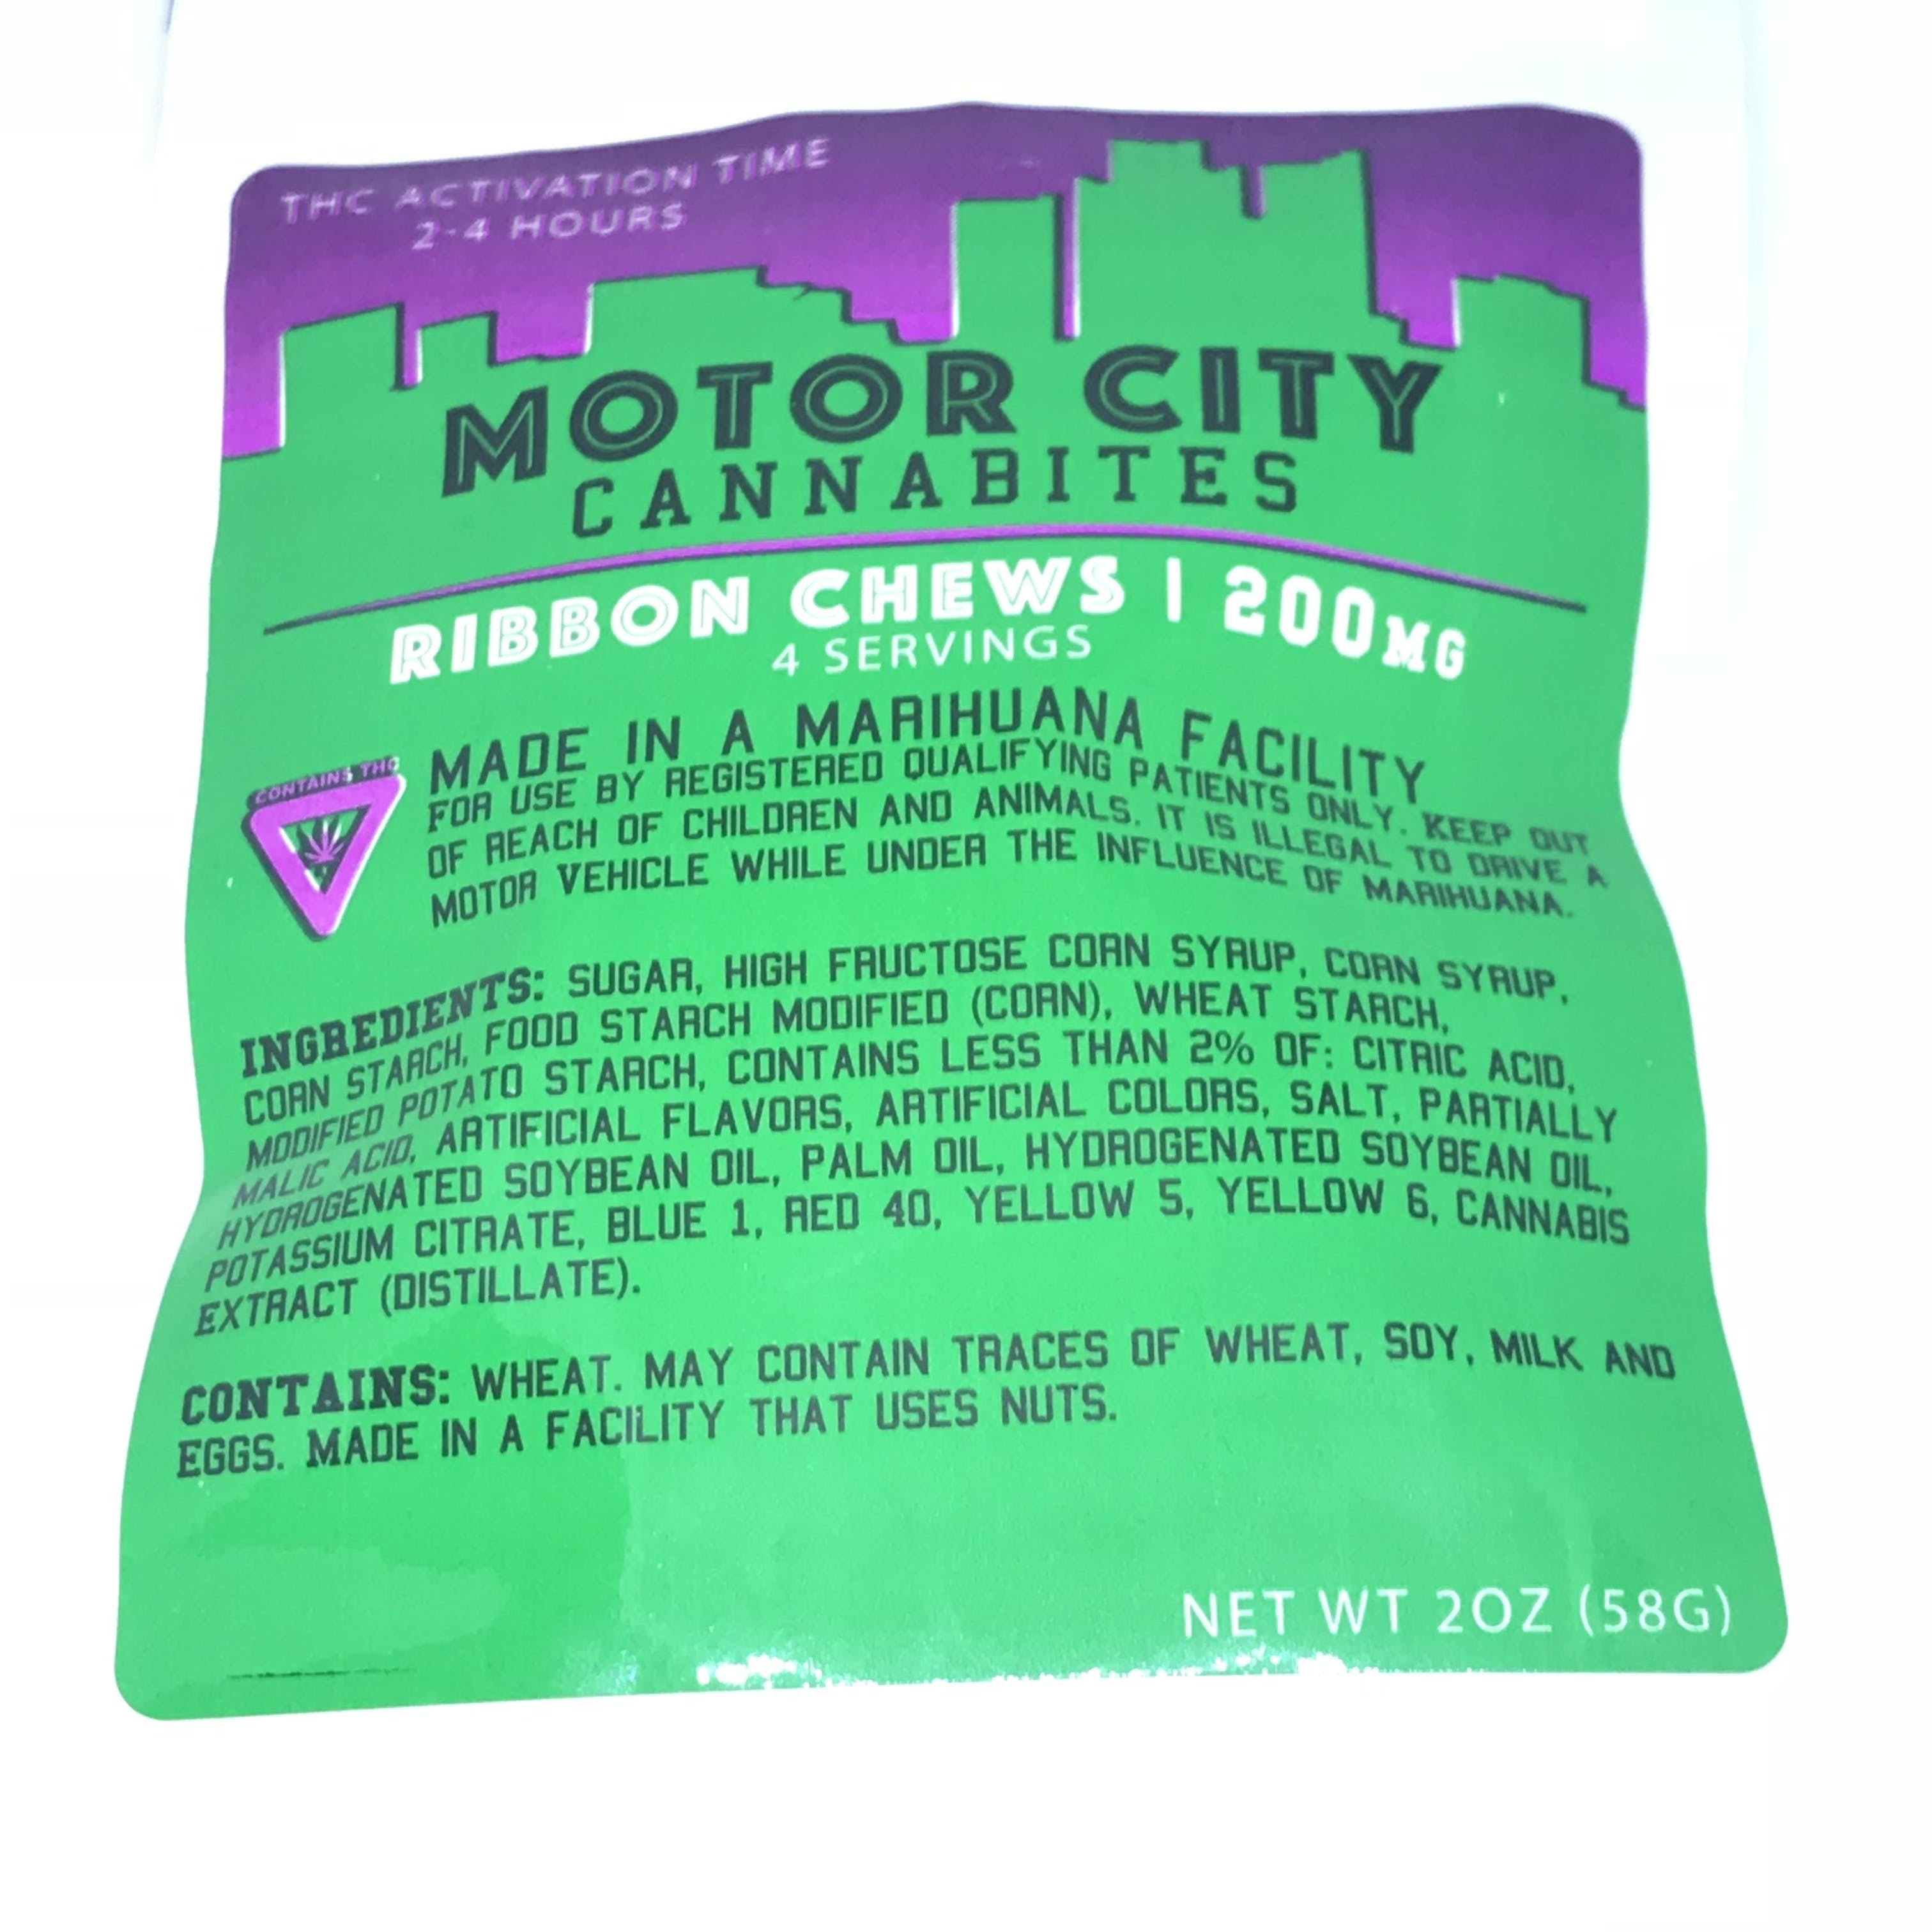 Motor city cannabites ribbon chews 200 mg